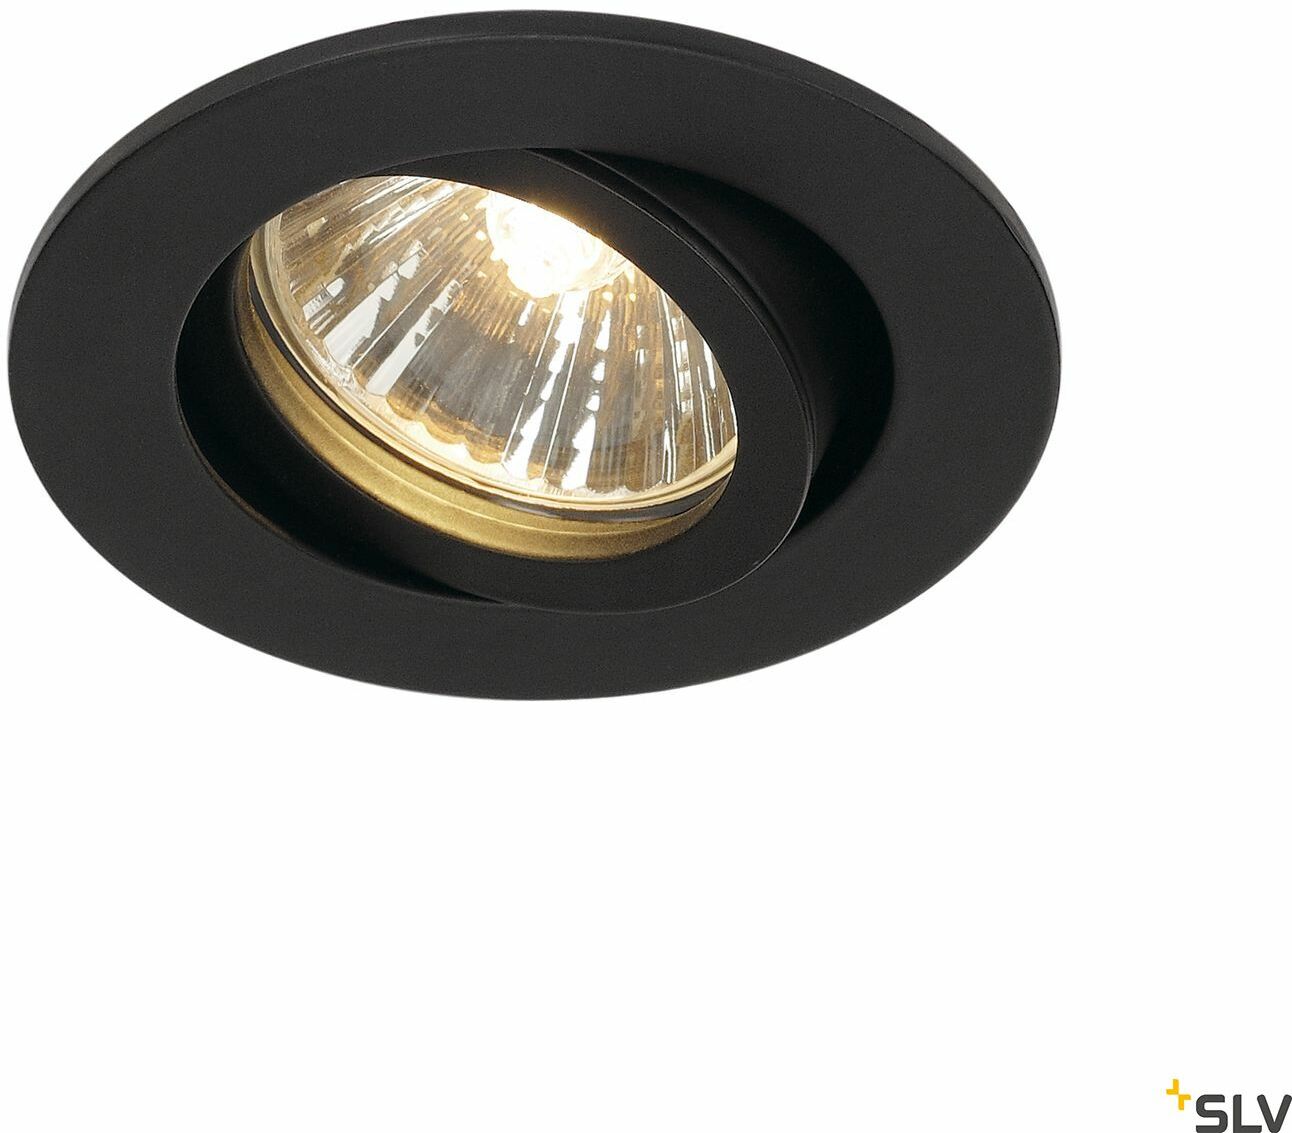 NEW TRIA 68, okrągła, lampa sufitowa wpuszczana, QPAR51, kolor czarny, 50W